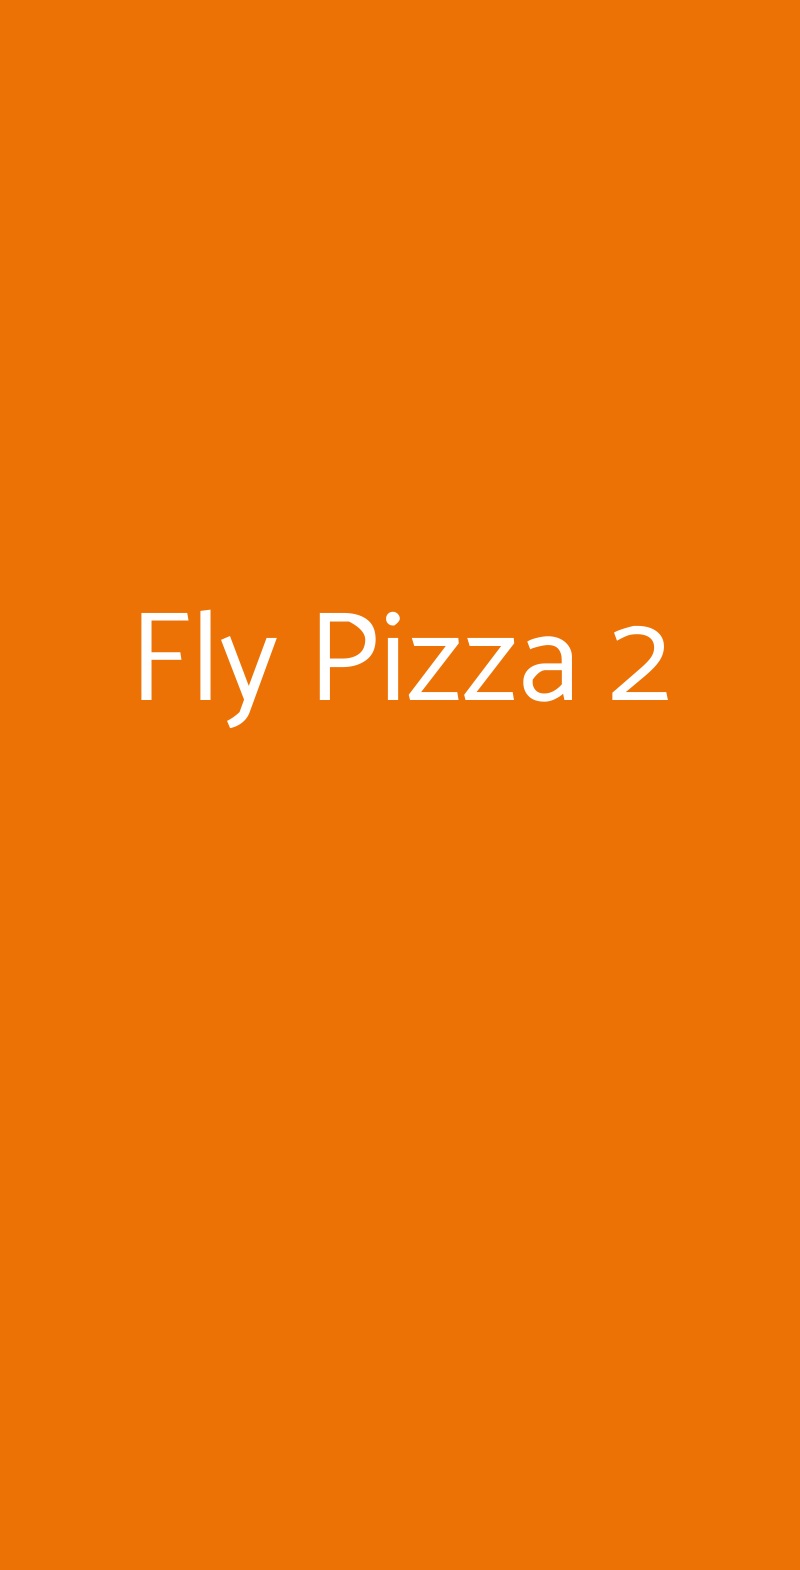 Fly Pizza 2 Milano menù 1 pagina